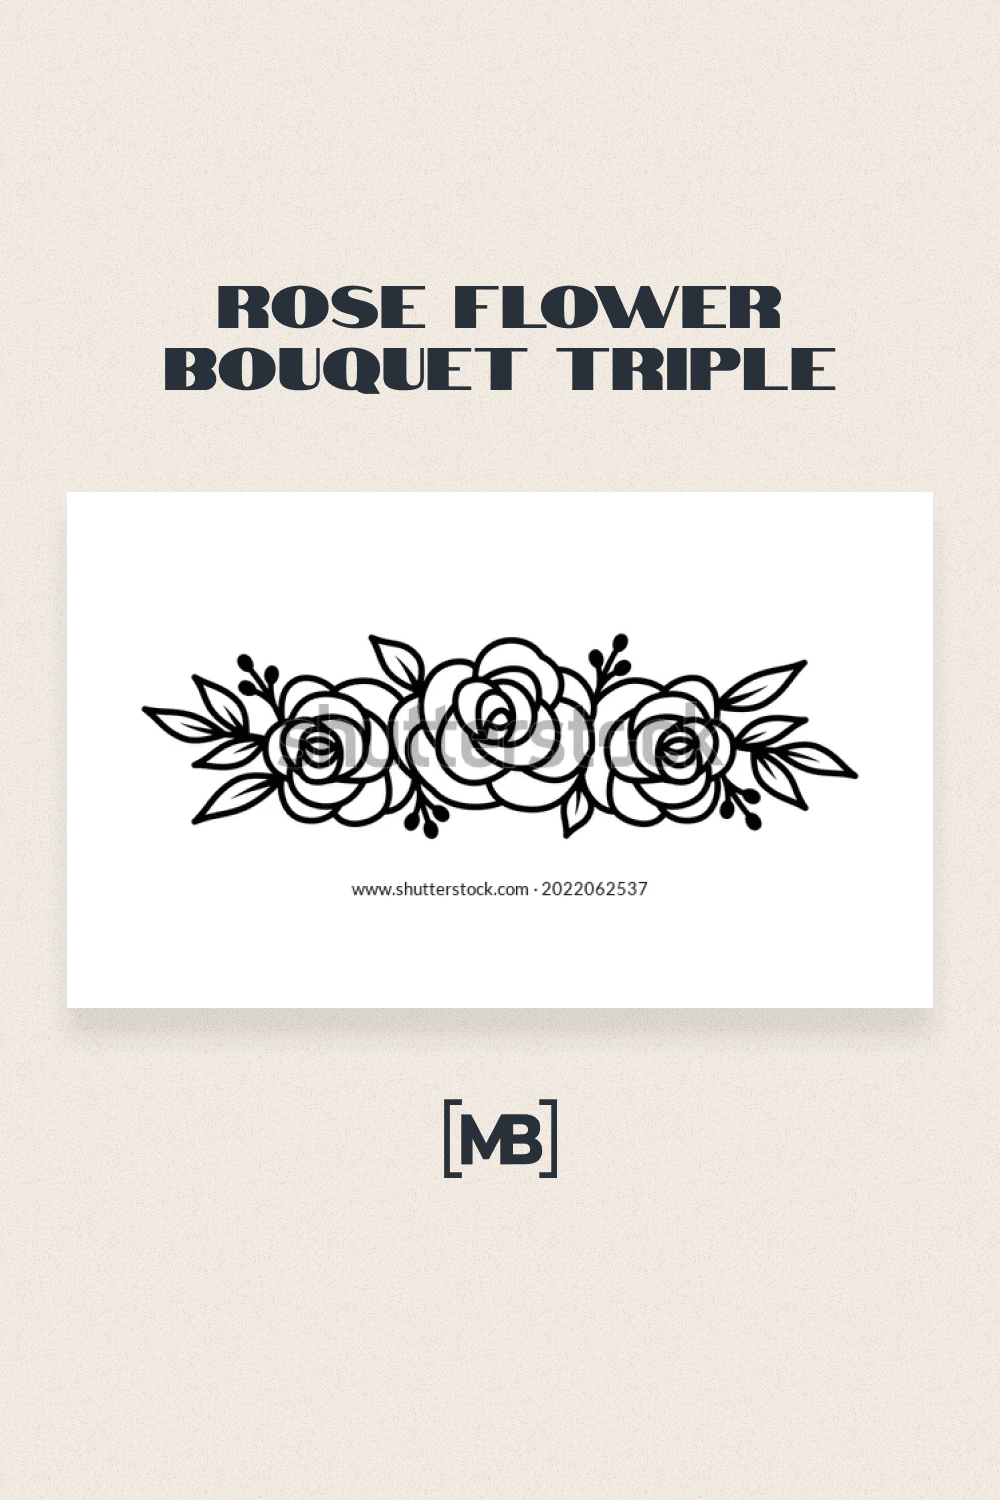 Rose flower bouquet triple.